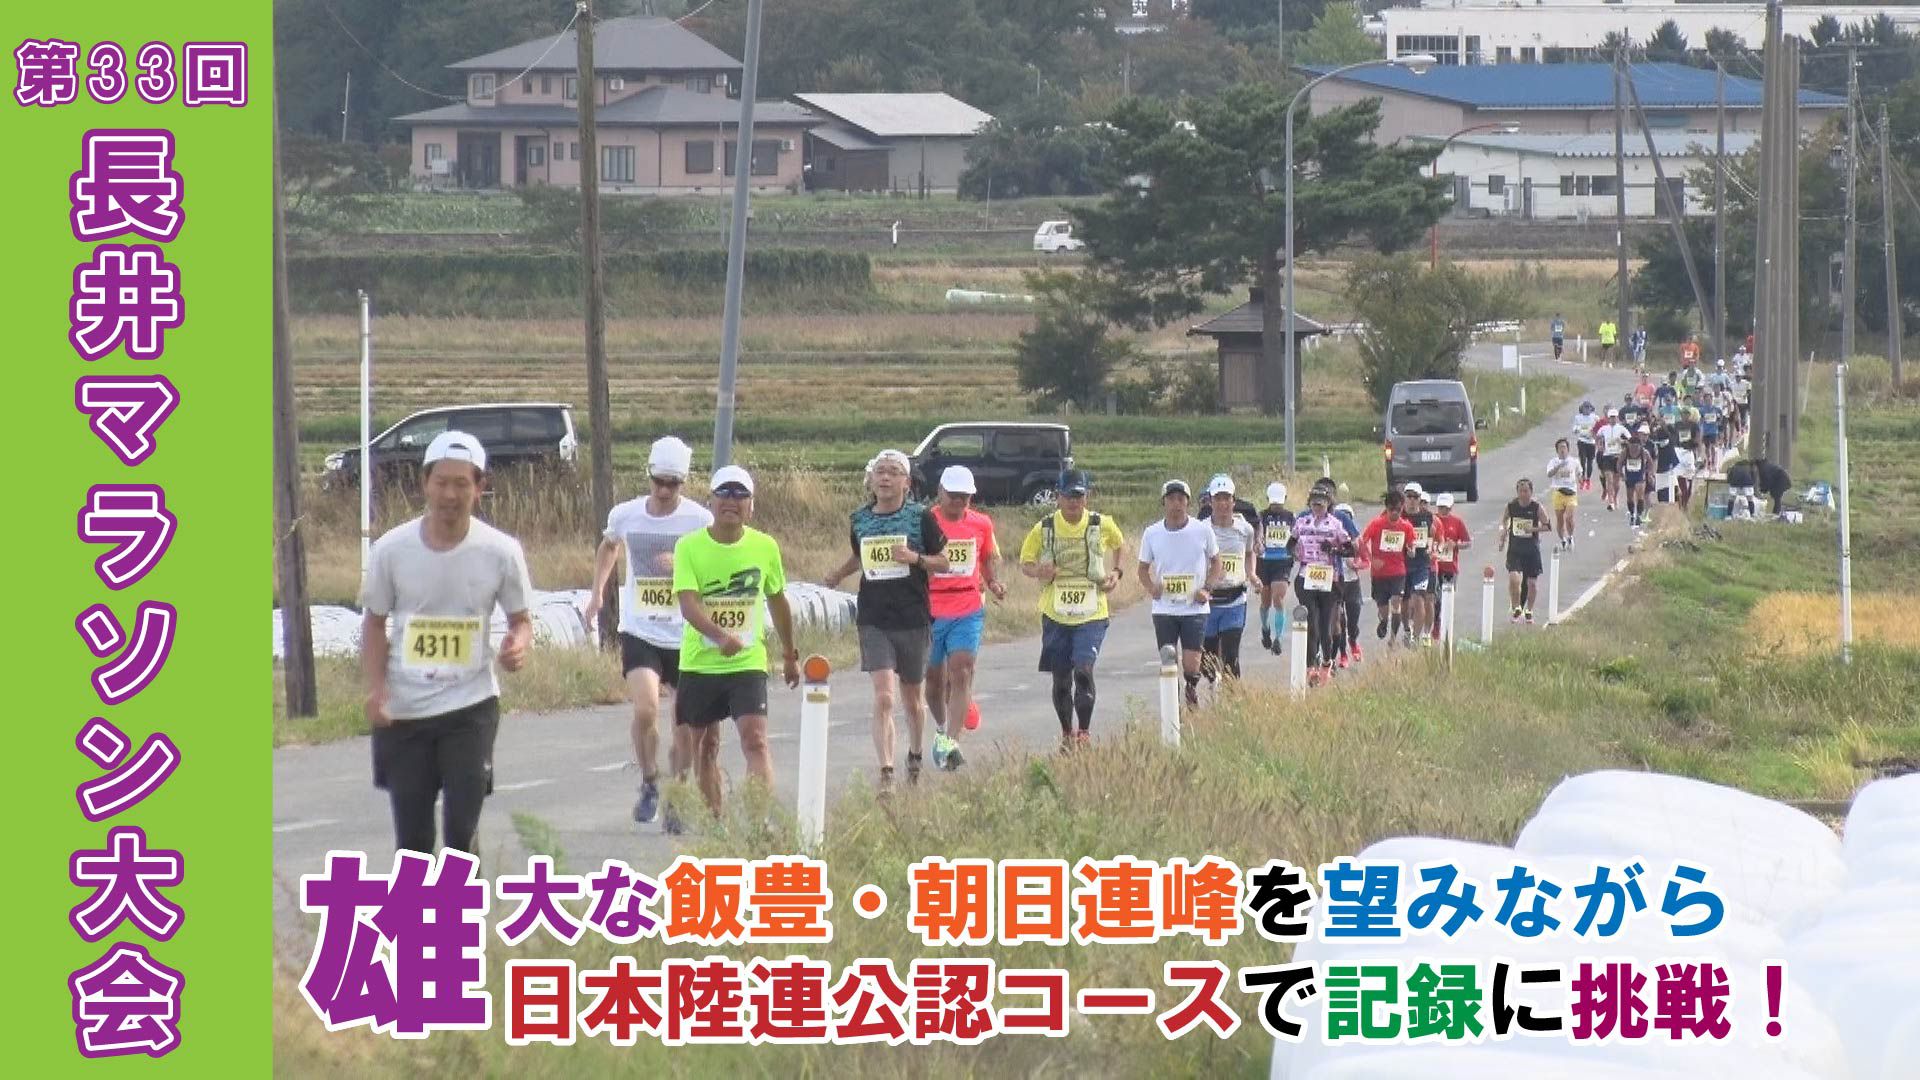 【長井市】第33回長井マラソン大会(令和元年10月20日) 